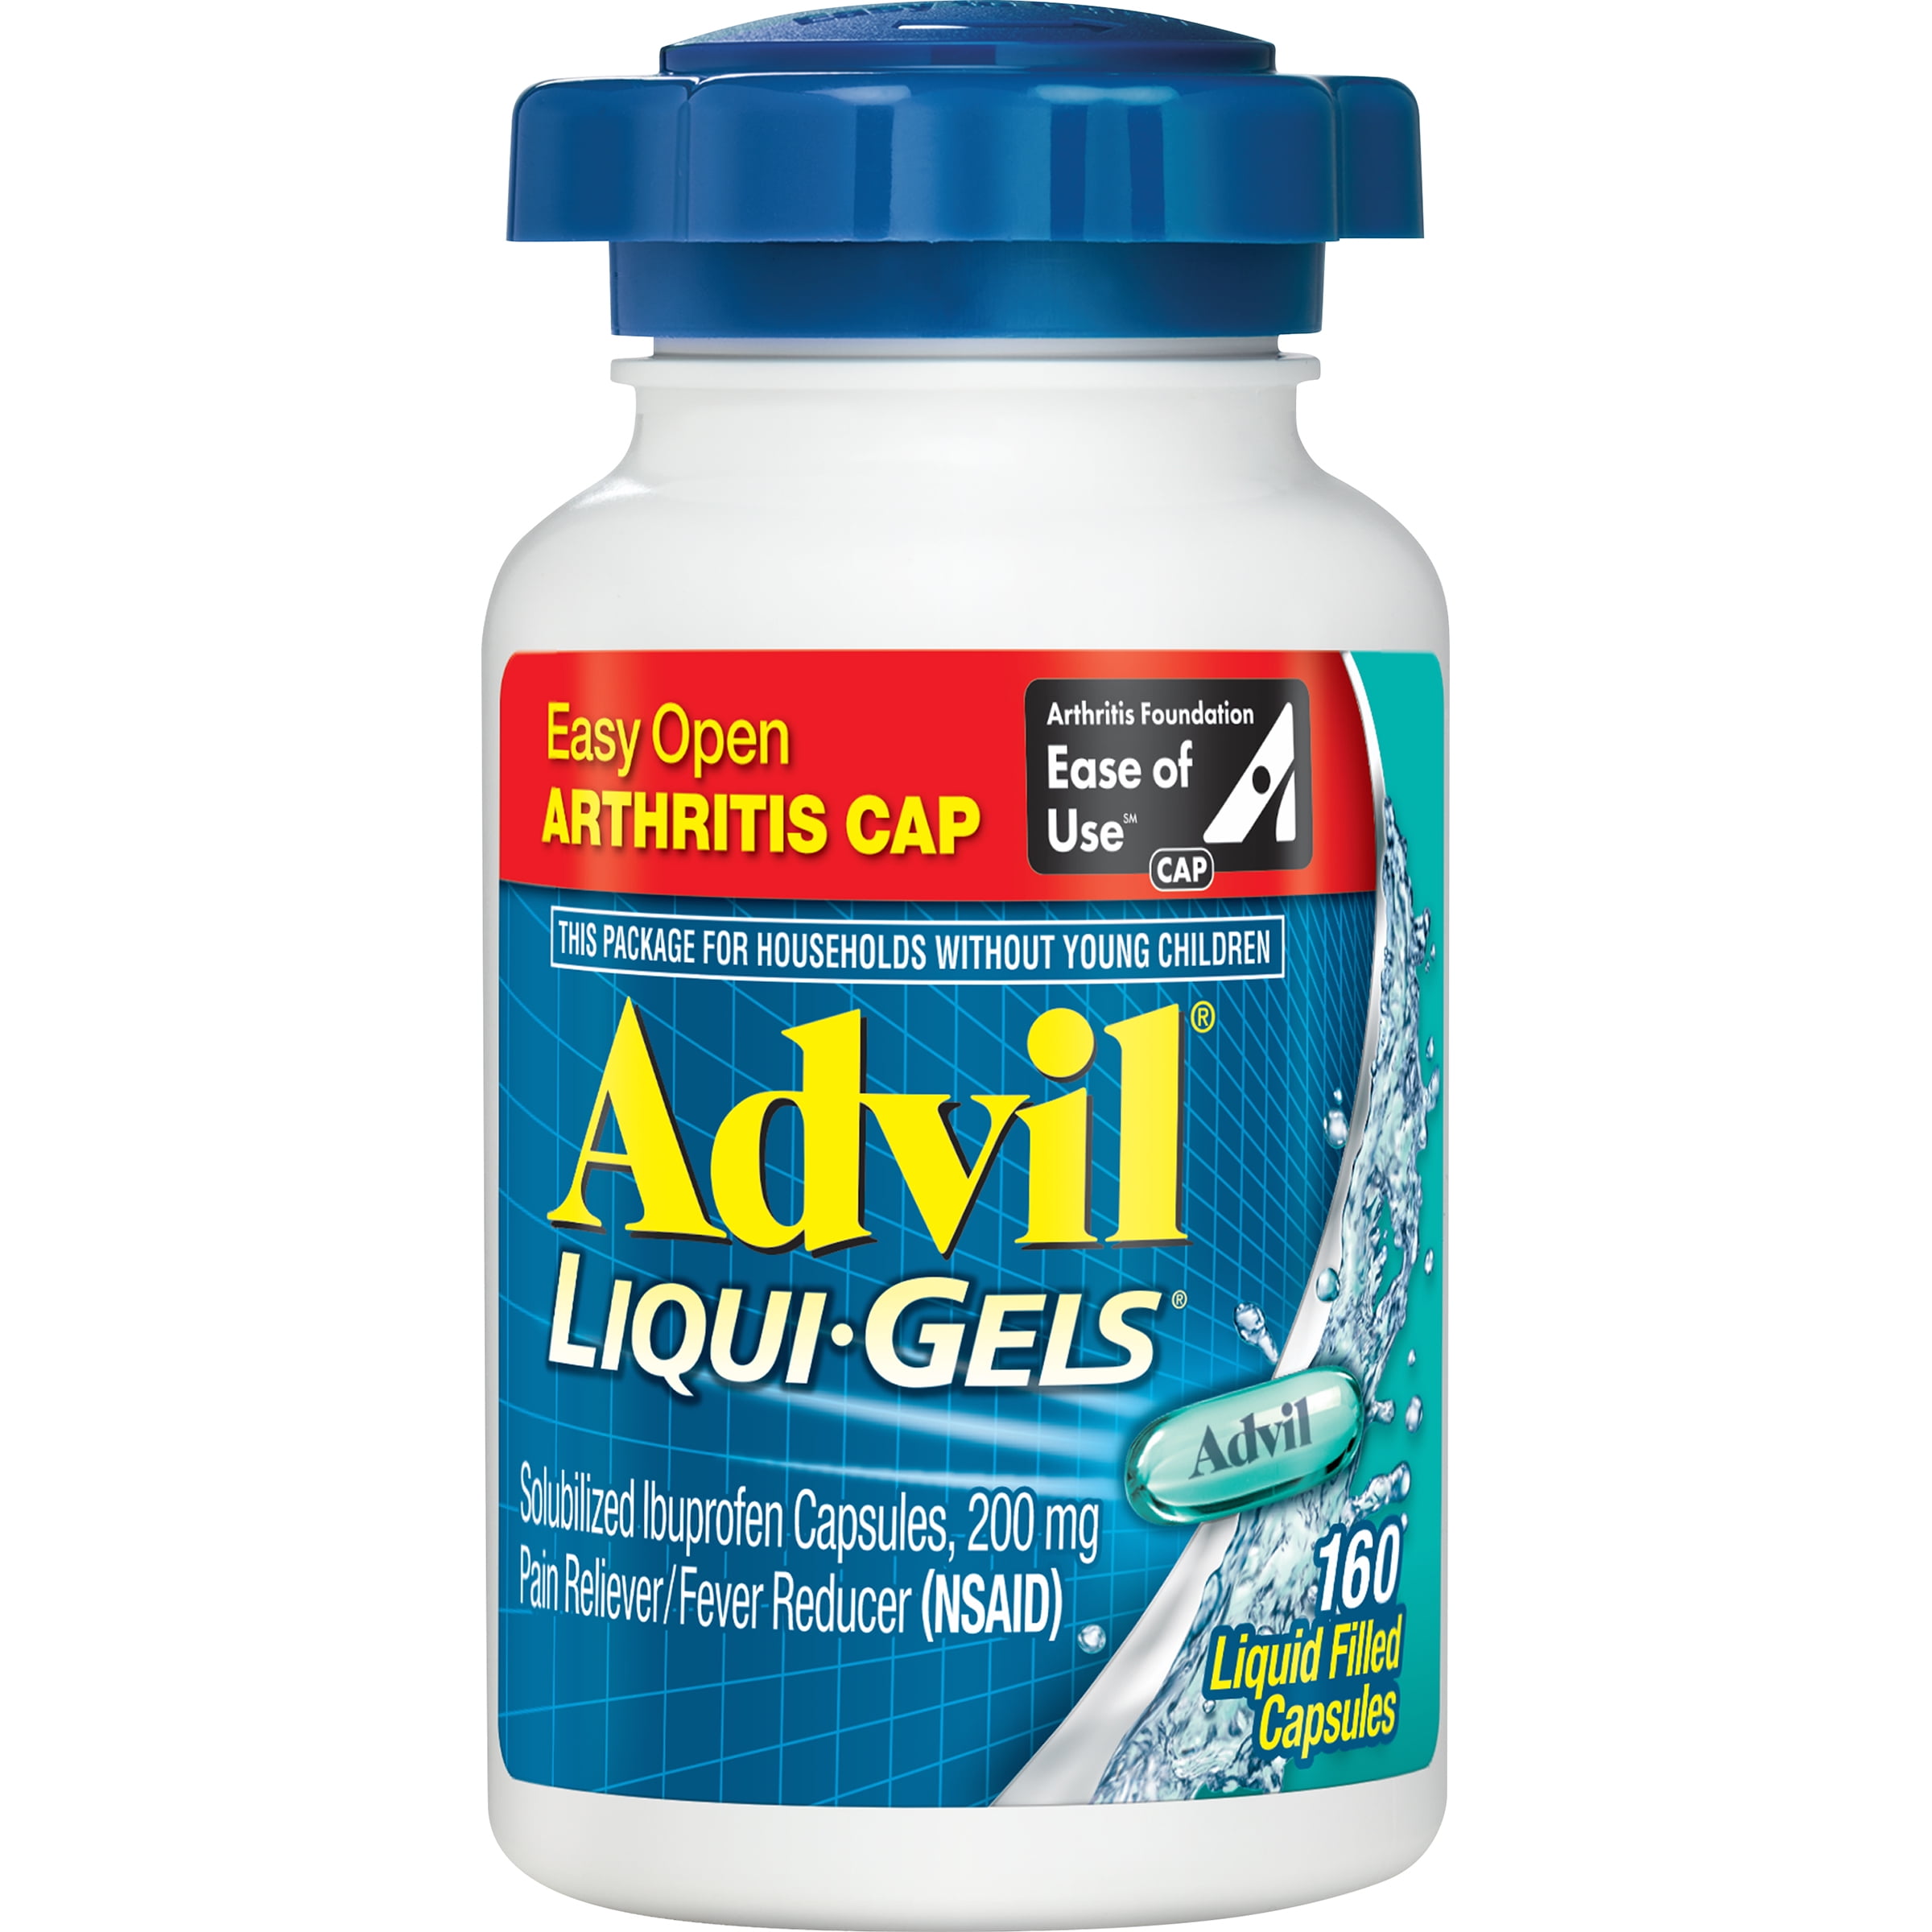 Liqui gels. Advil Liqui-Gels. Advil 600 для суставов.